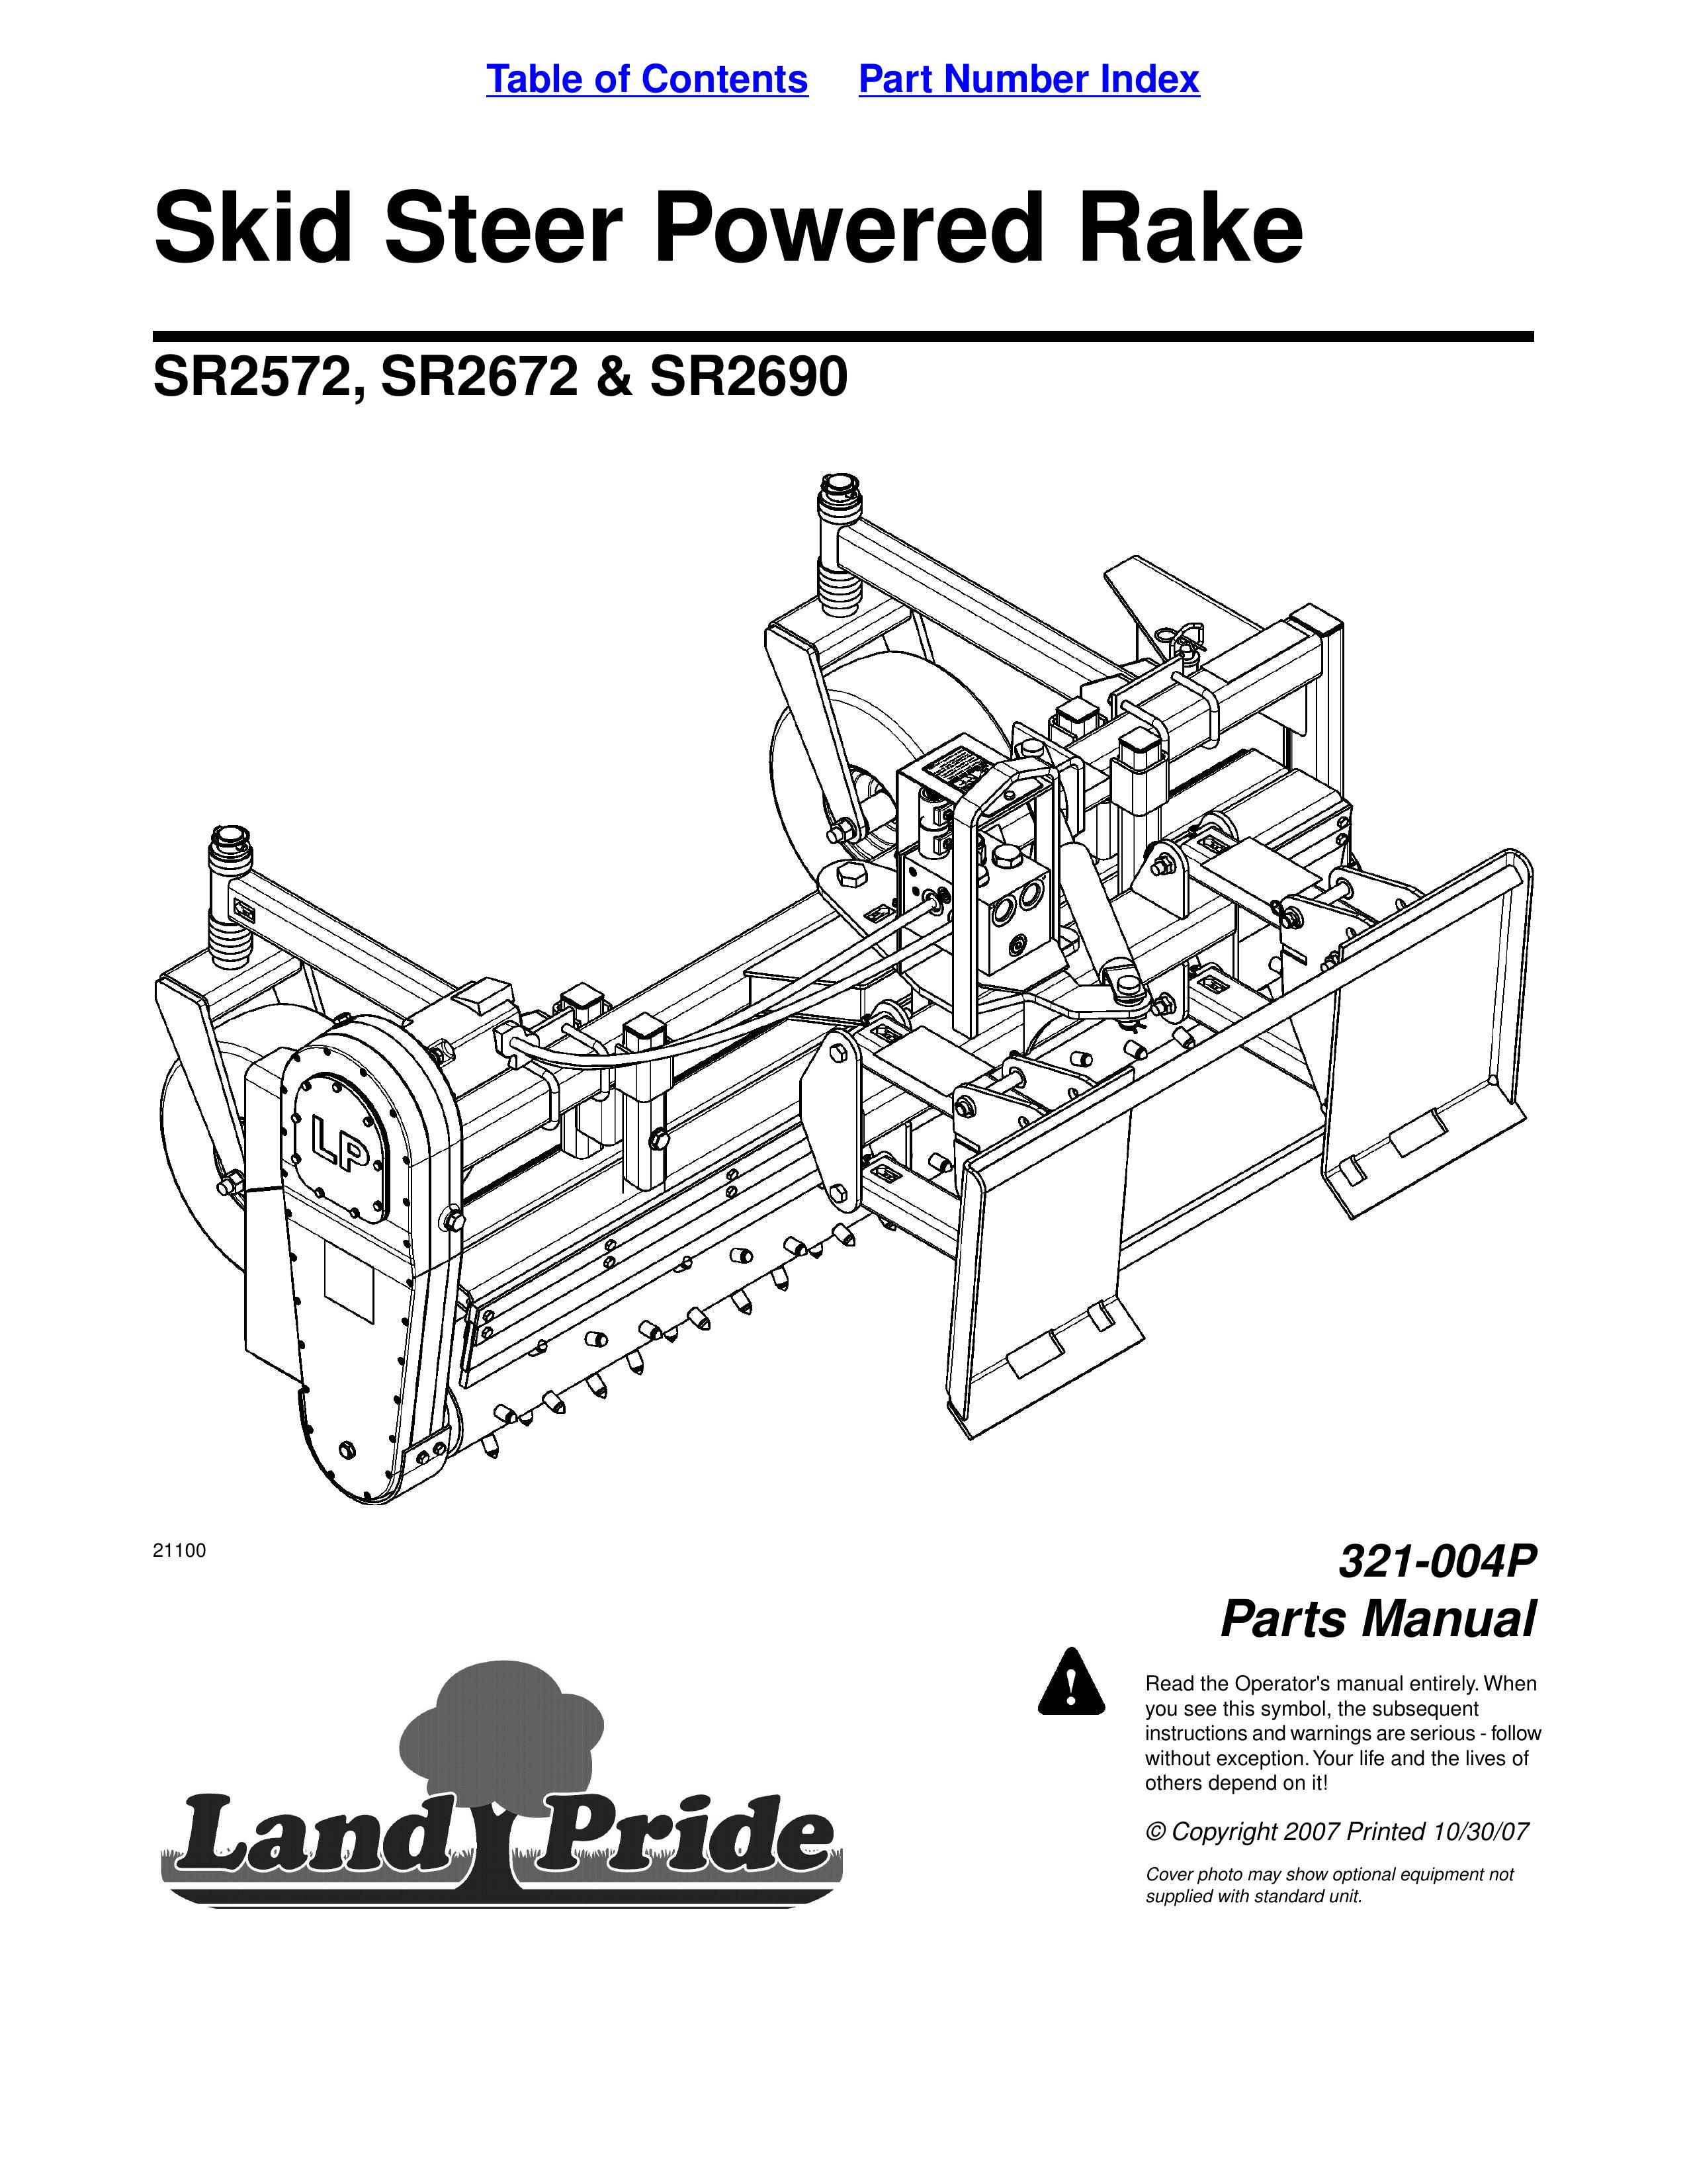 Land Pride SR2672 Compact Loader User Manual